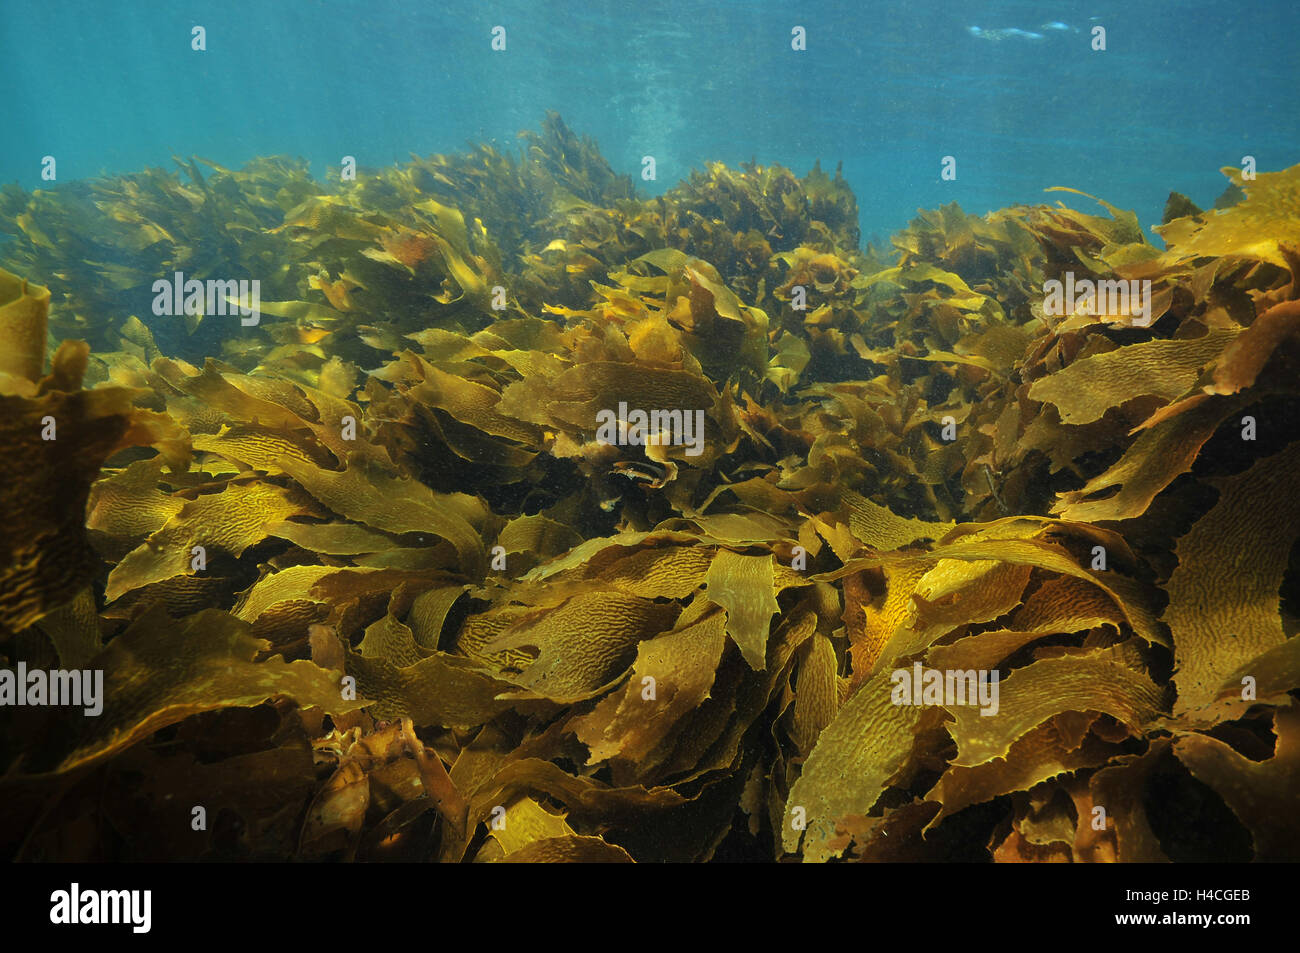 Brown sgambate kelp muovendo con swell Foto Stock